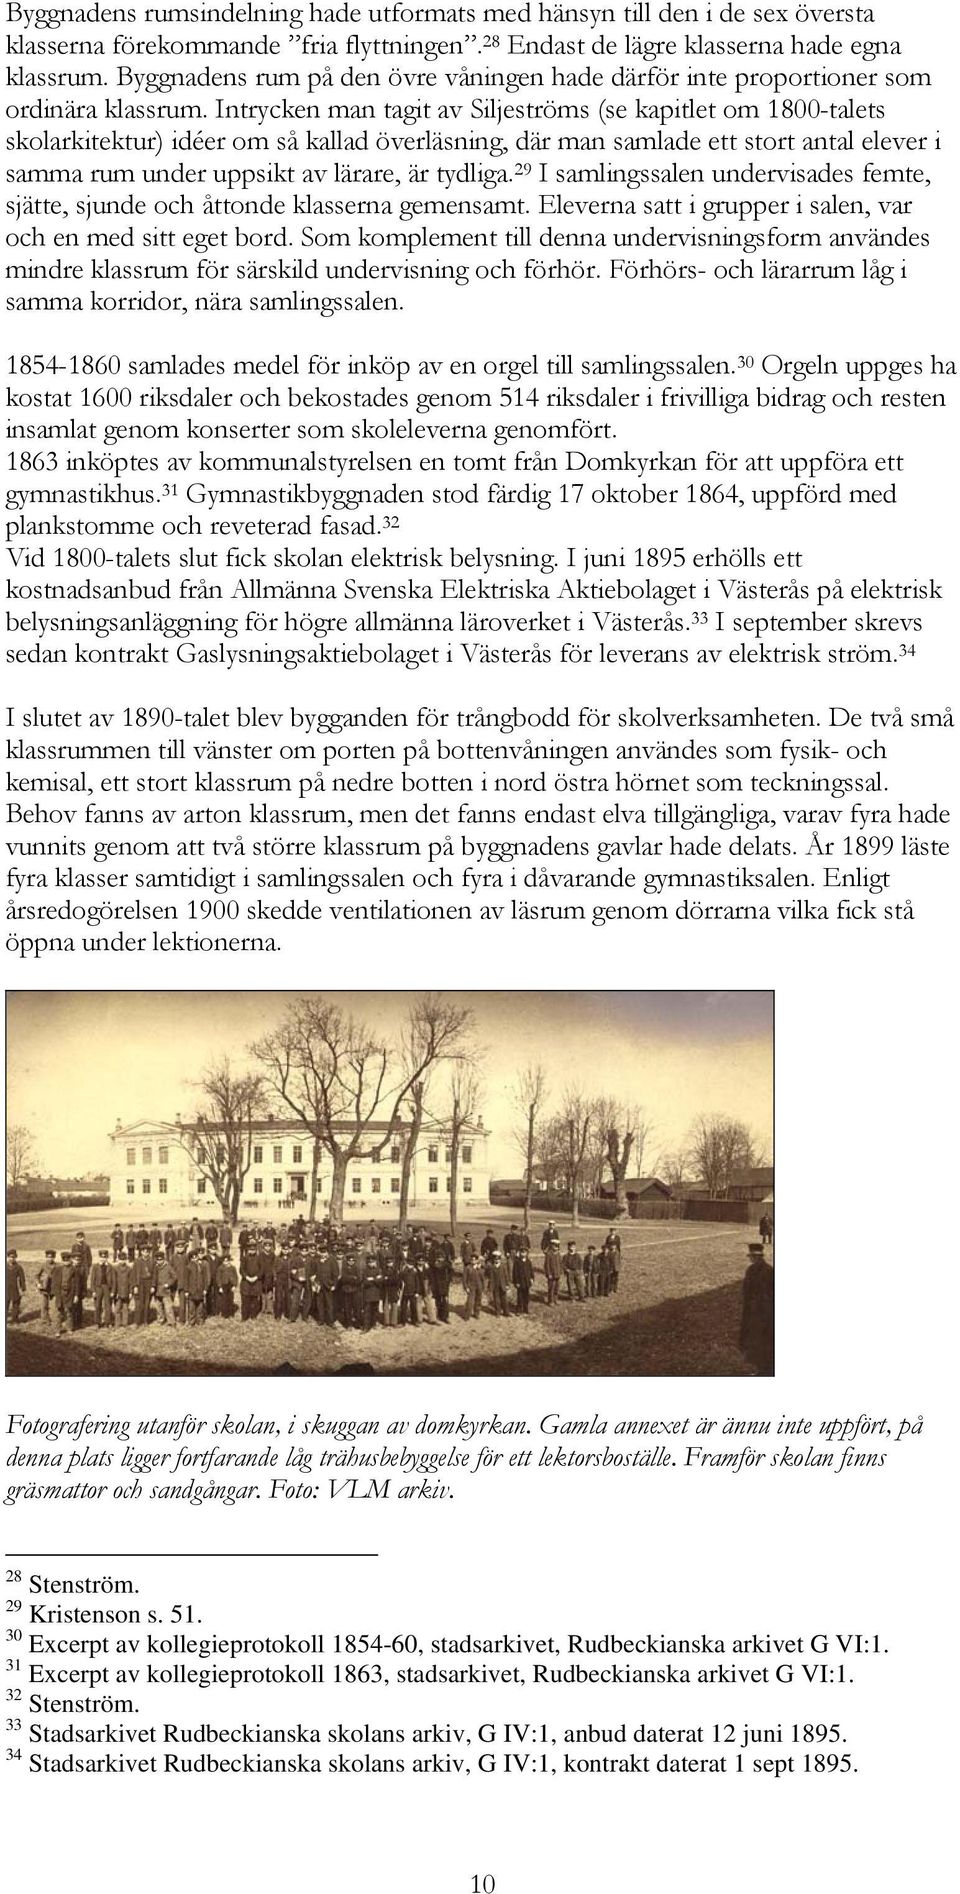 Intrycken man tagit av Siljeströms (se kapitlet om 1800-talets skolarkitektur) idéer om så kallad överläsning, där man samlade ett stort antal elever i samma rum under uppsikt av lärare, är tydliga.